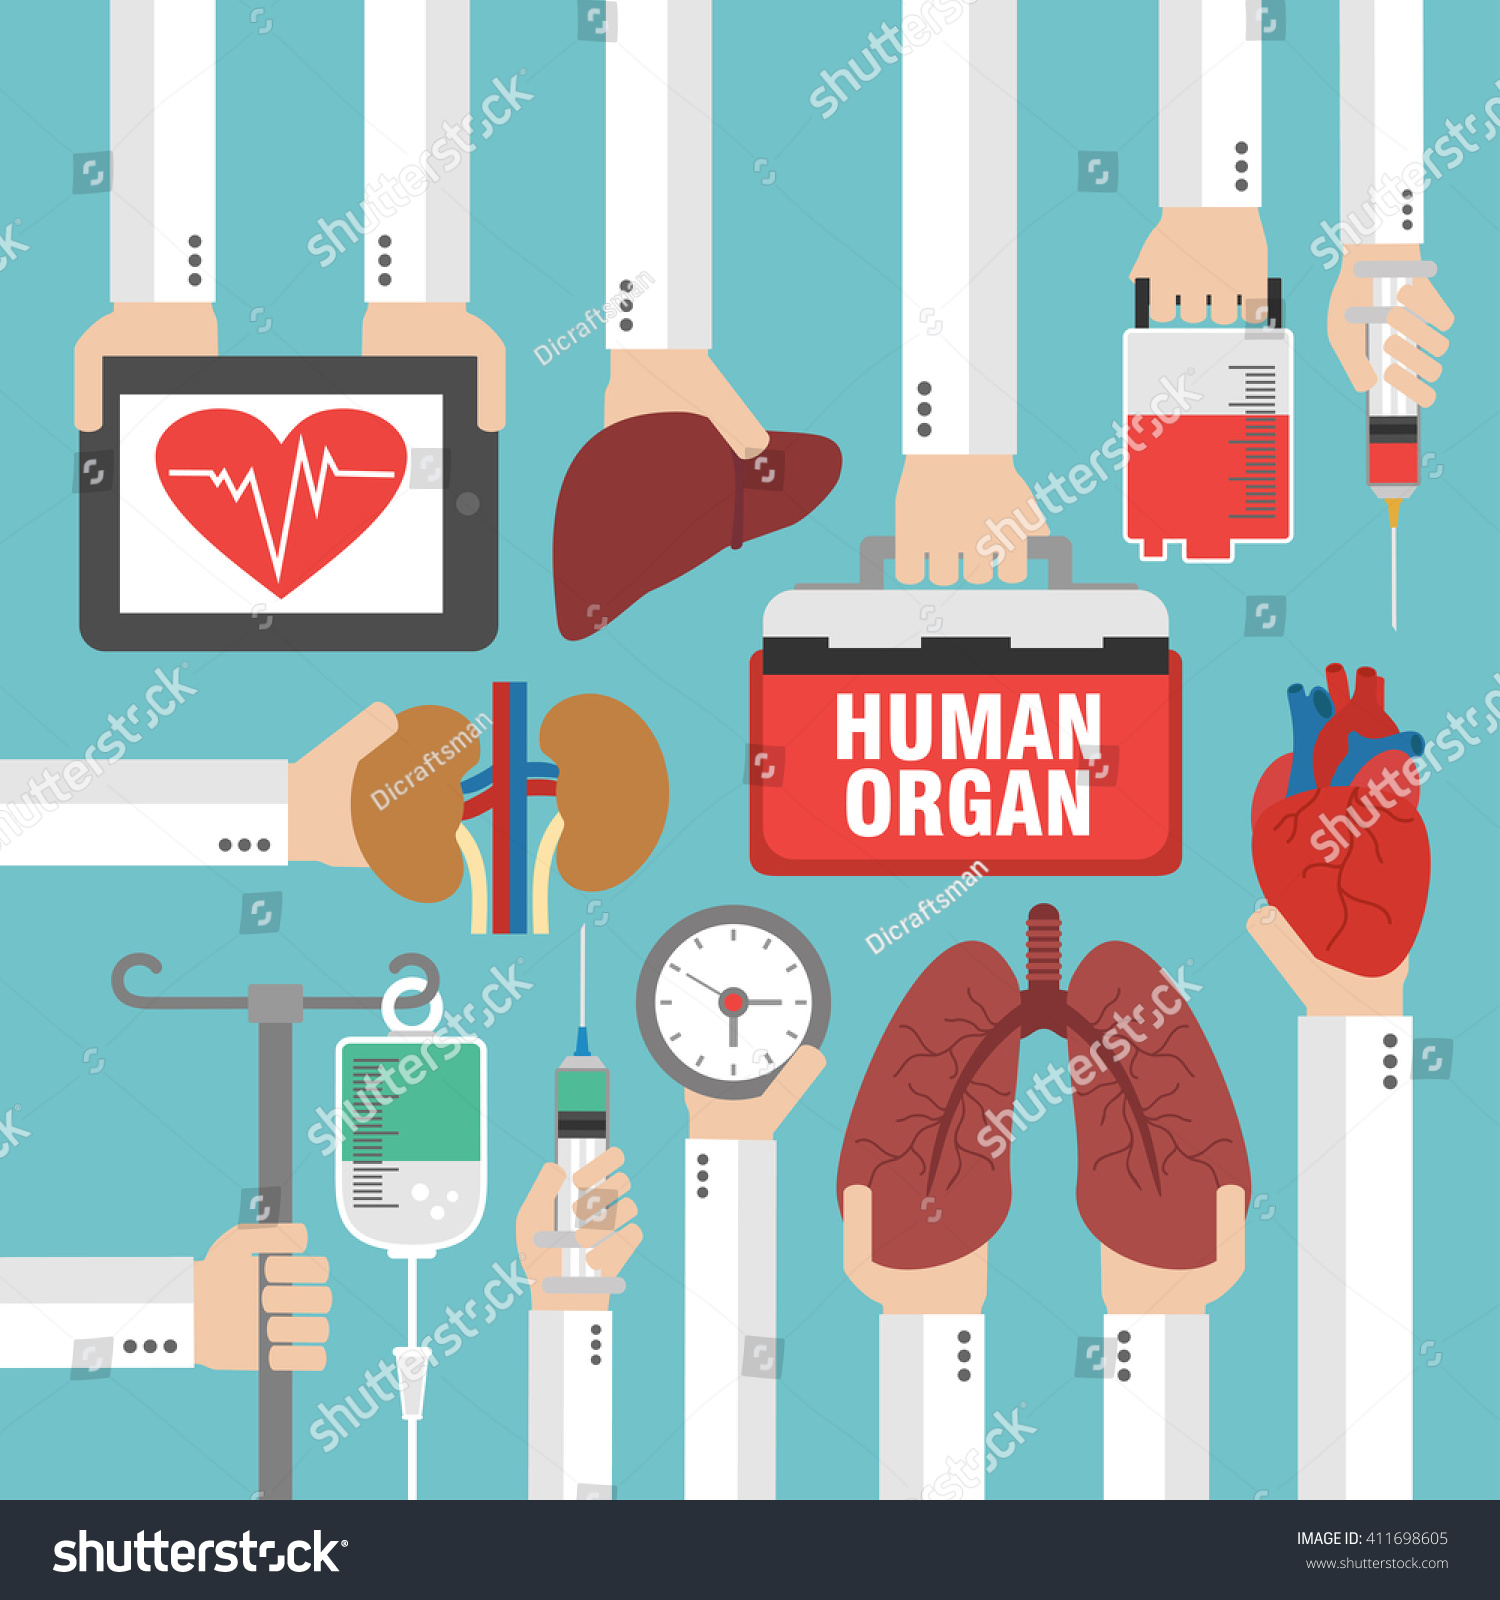 Human Organ Transplantation Design Flatvector Illustration Stock Vector 411698605 Shutterstock